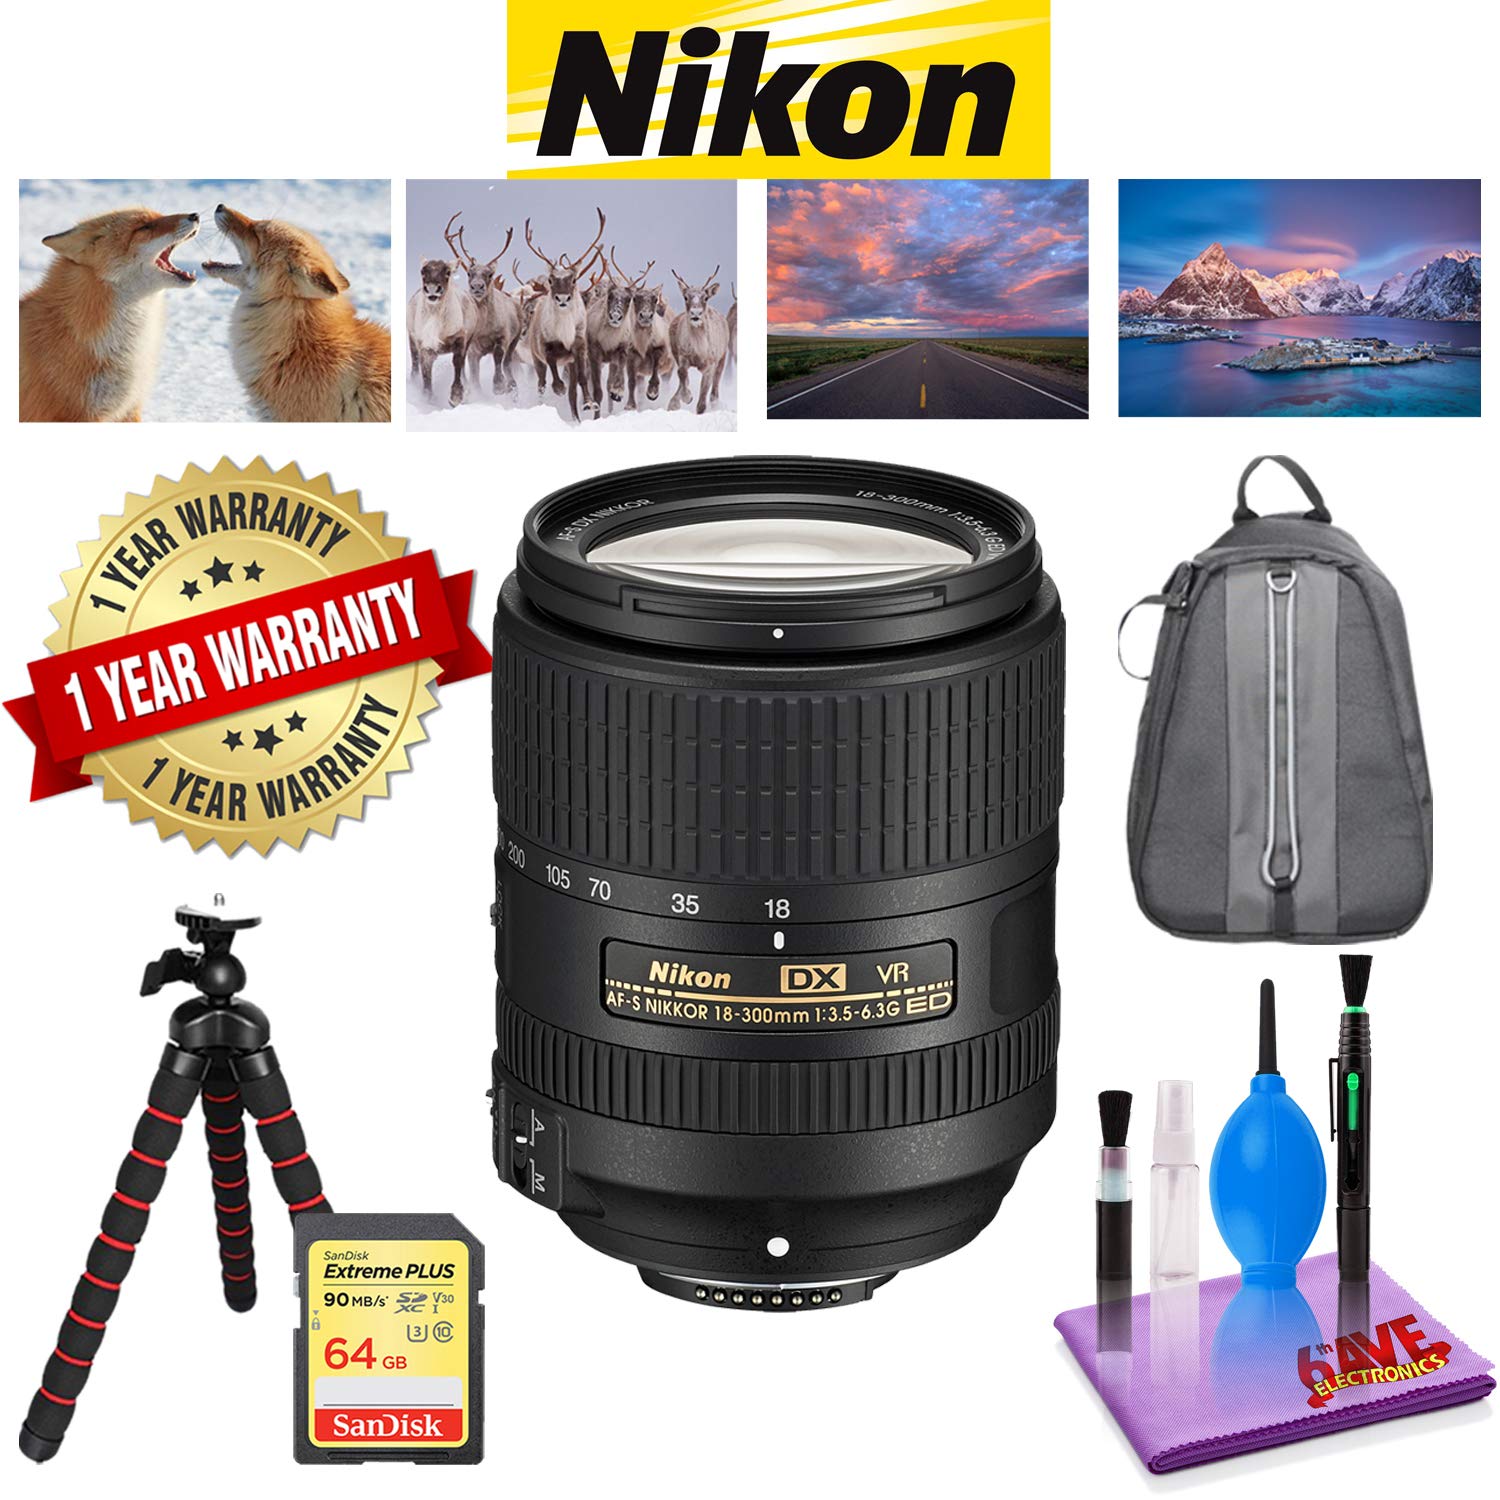 NIKON 18-300MM F/3.5-6.3G ED AF-S DX VR Lens with 1 Year Warranty, Sandisk 64 GB Memory Card, Deluxe Camera Backpack Bundle